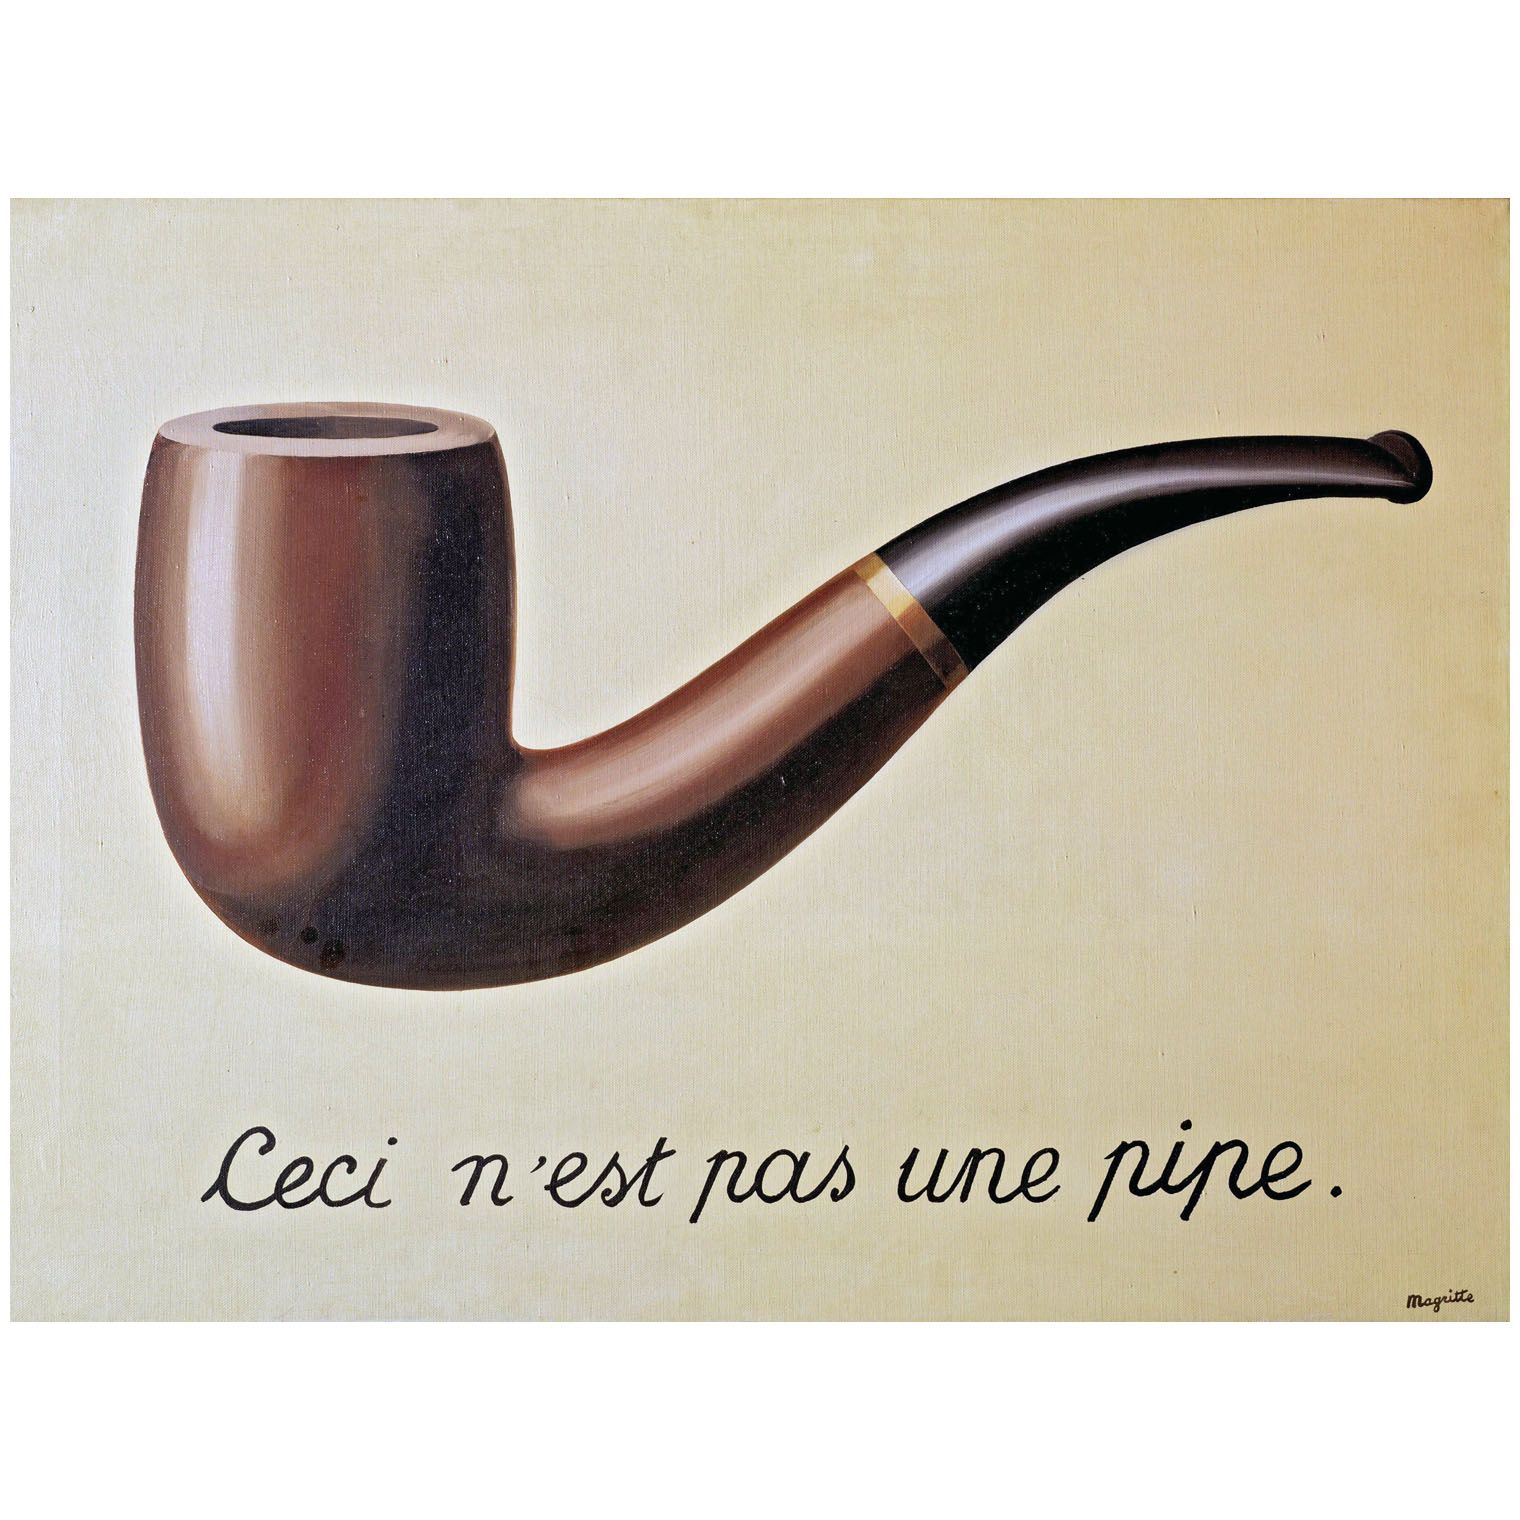 Rene Magritte. La trahison des images. 1929. LACMA, Los Angelis